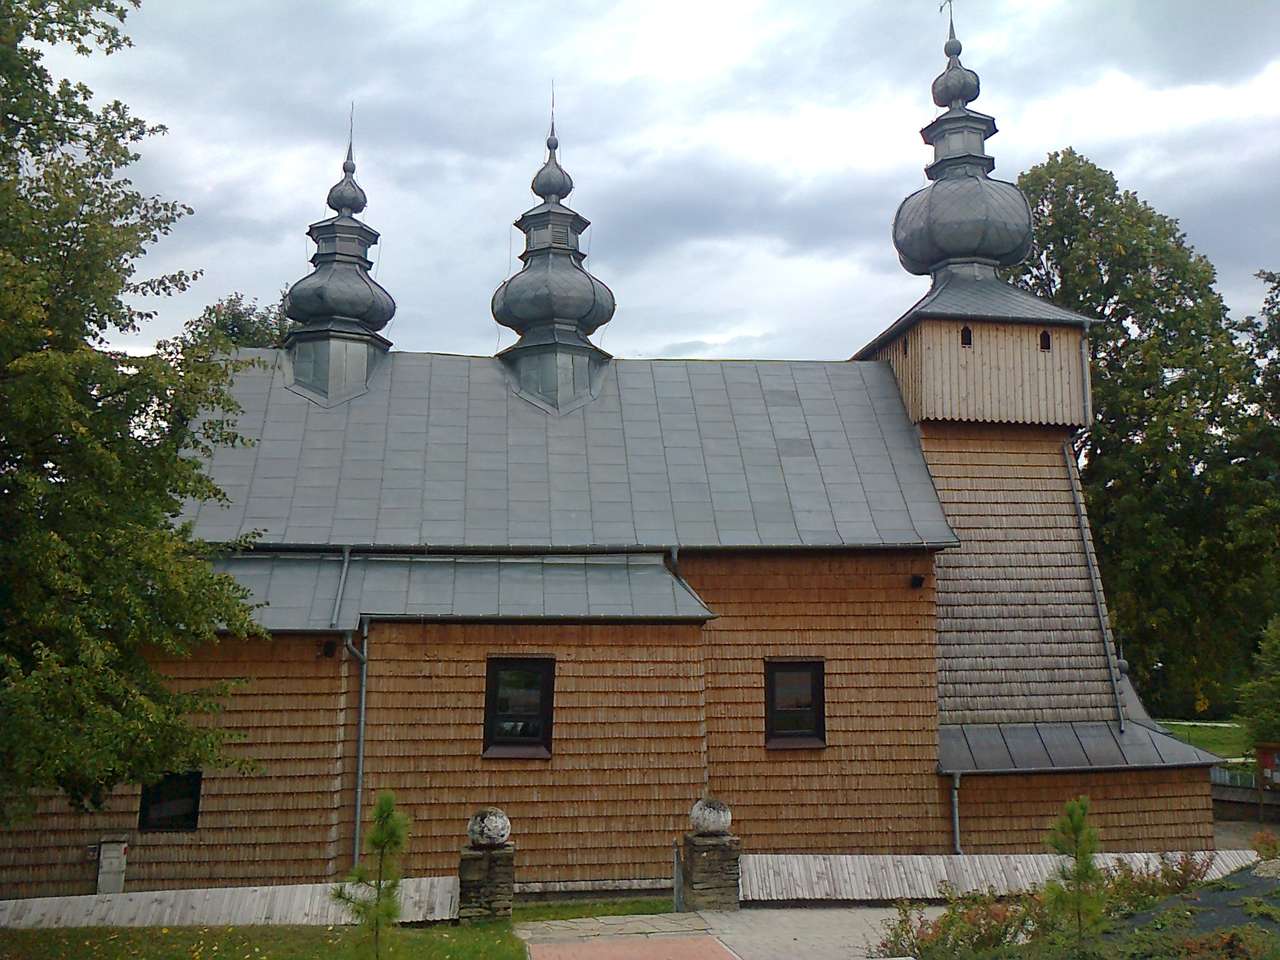 Orthodox church in Binczarowa puzzle online from photo